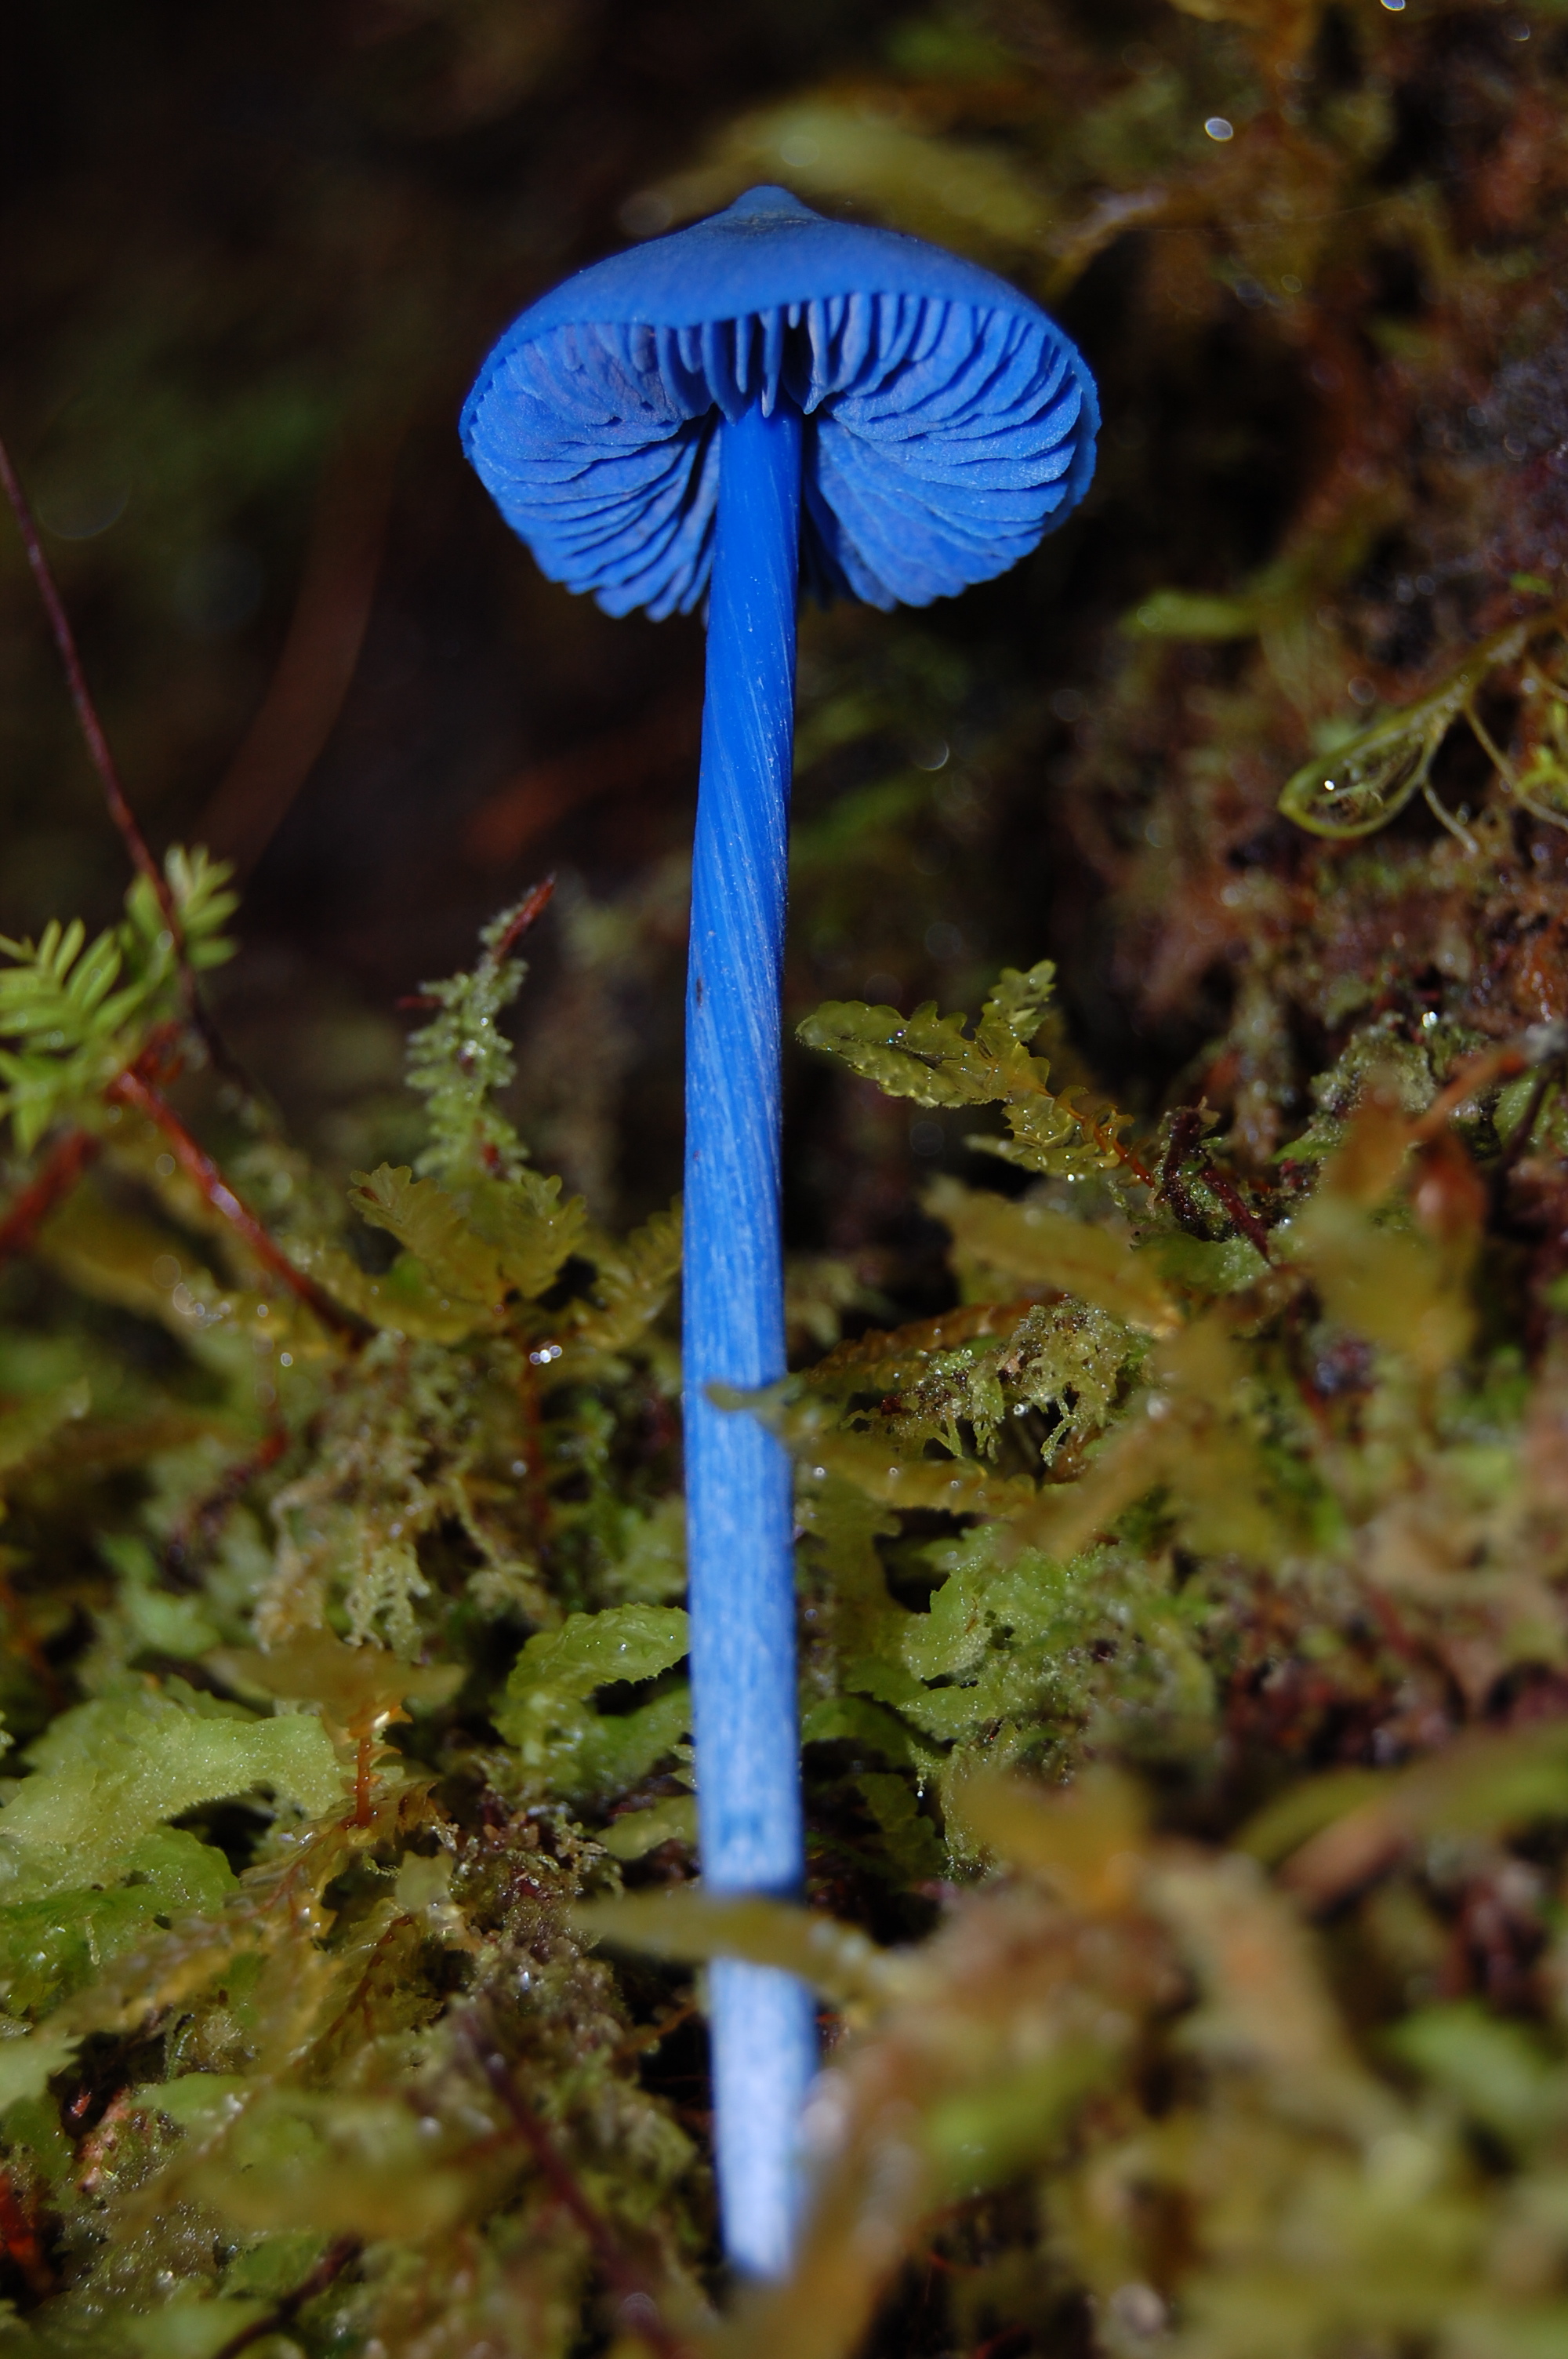 Glowing blue mushrooms